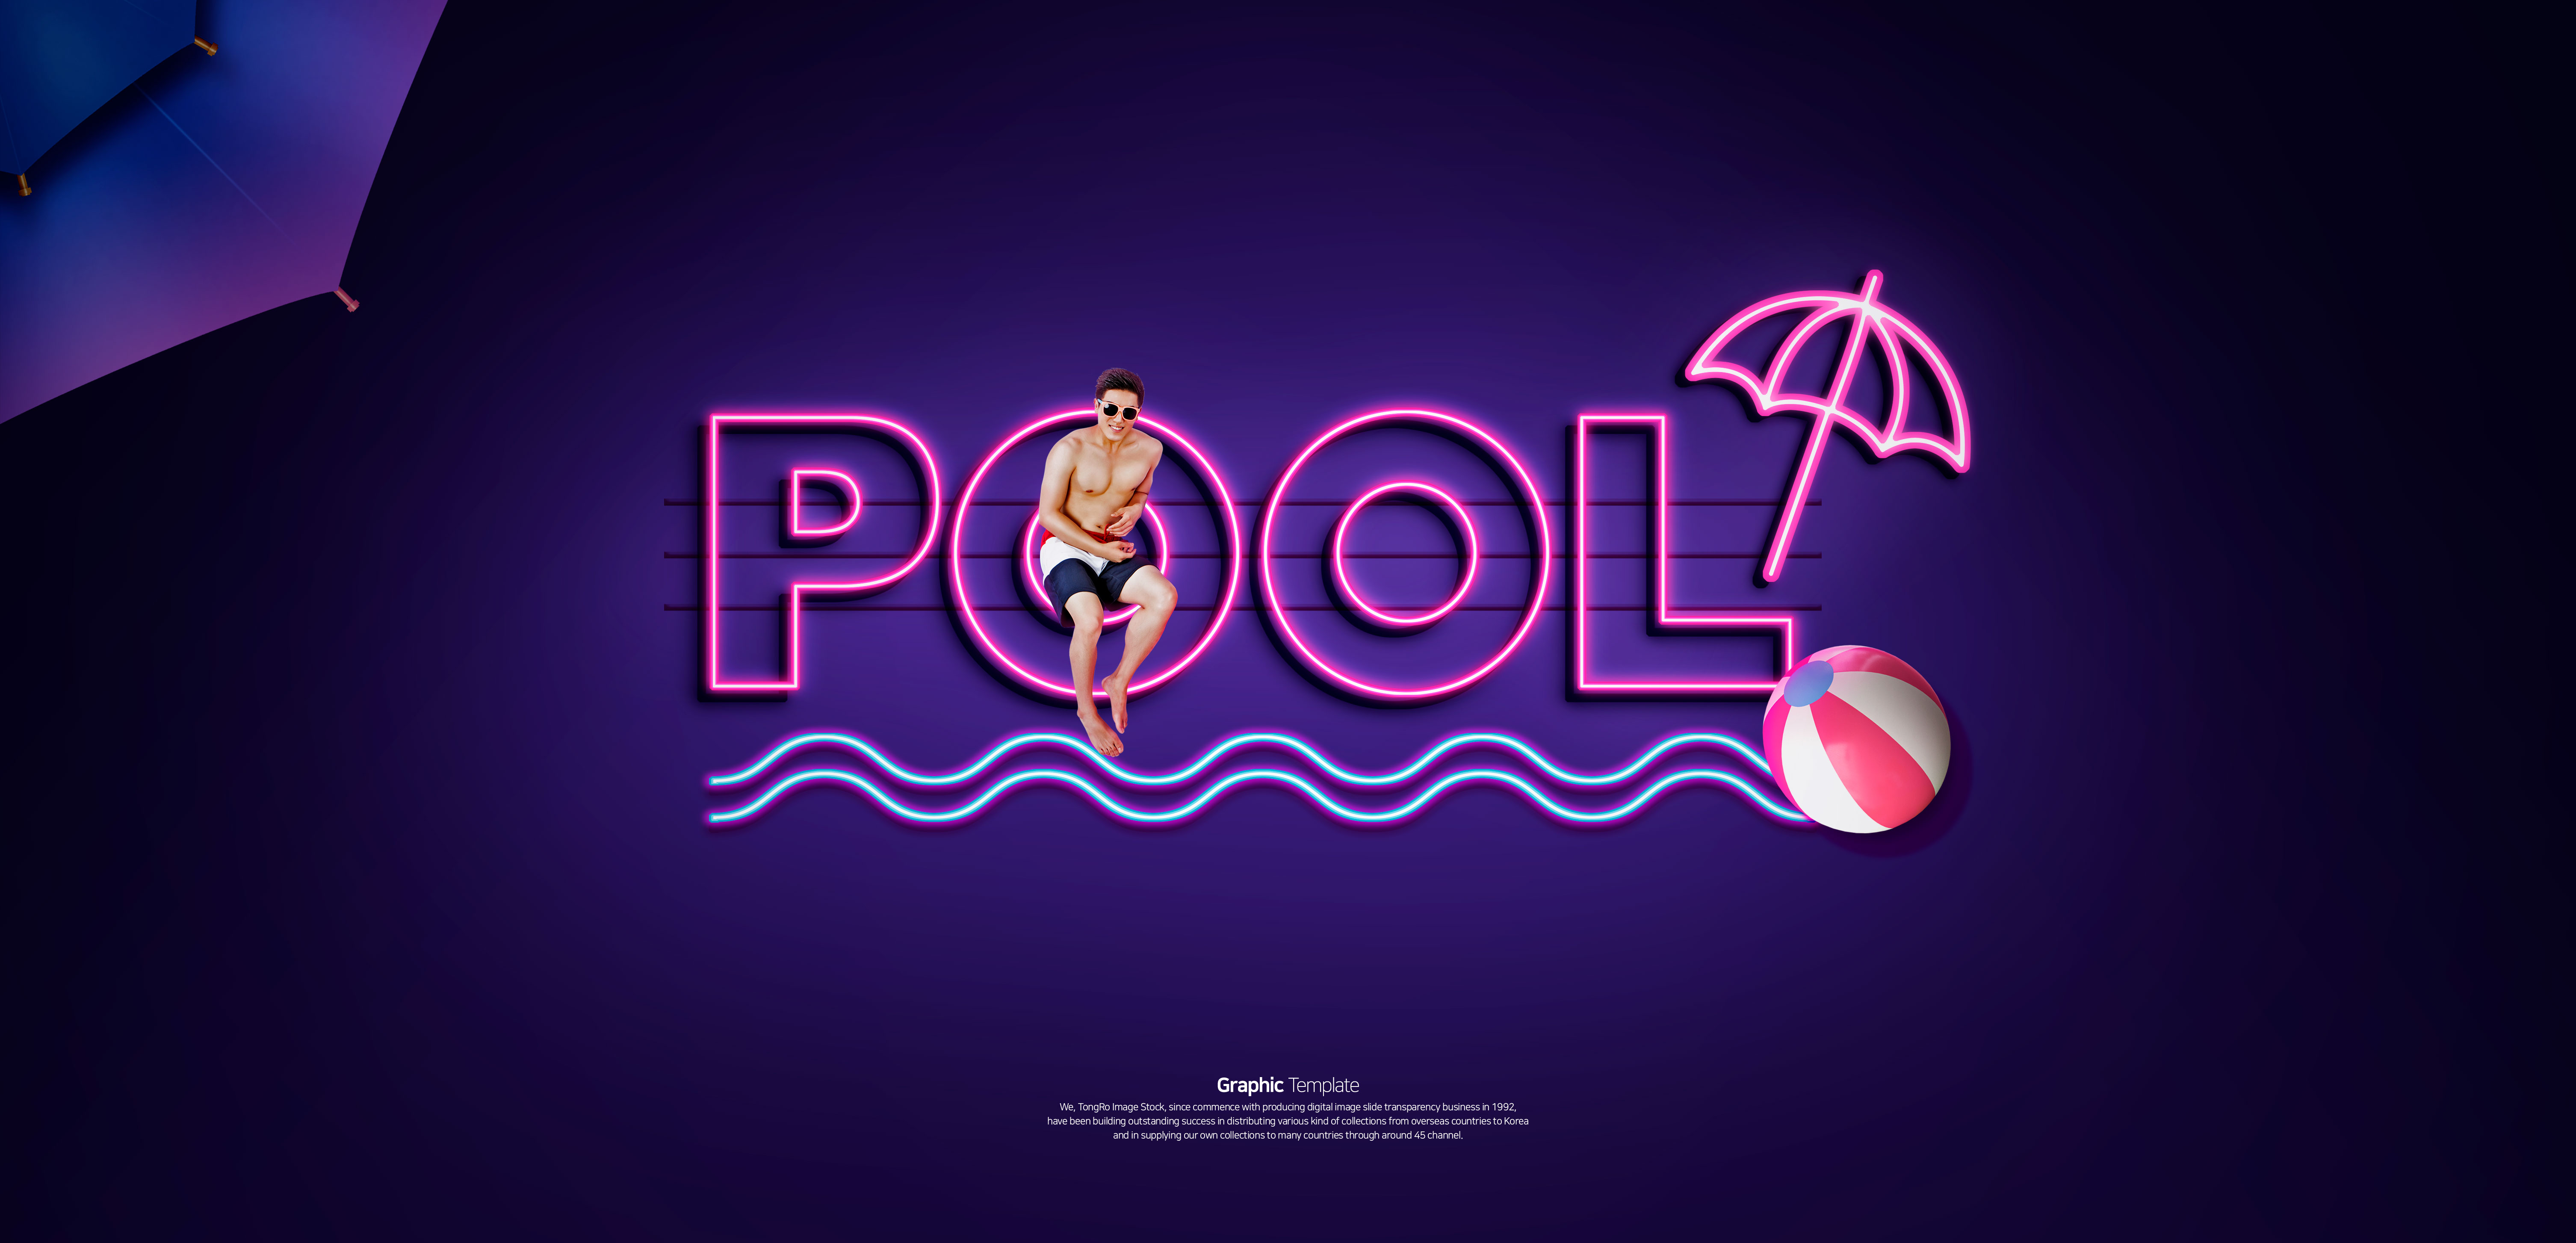 泳池派对聚会活动宣传霓虹灯Banner蚂蚁素材精选广告模板插图